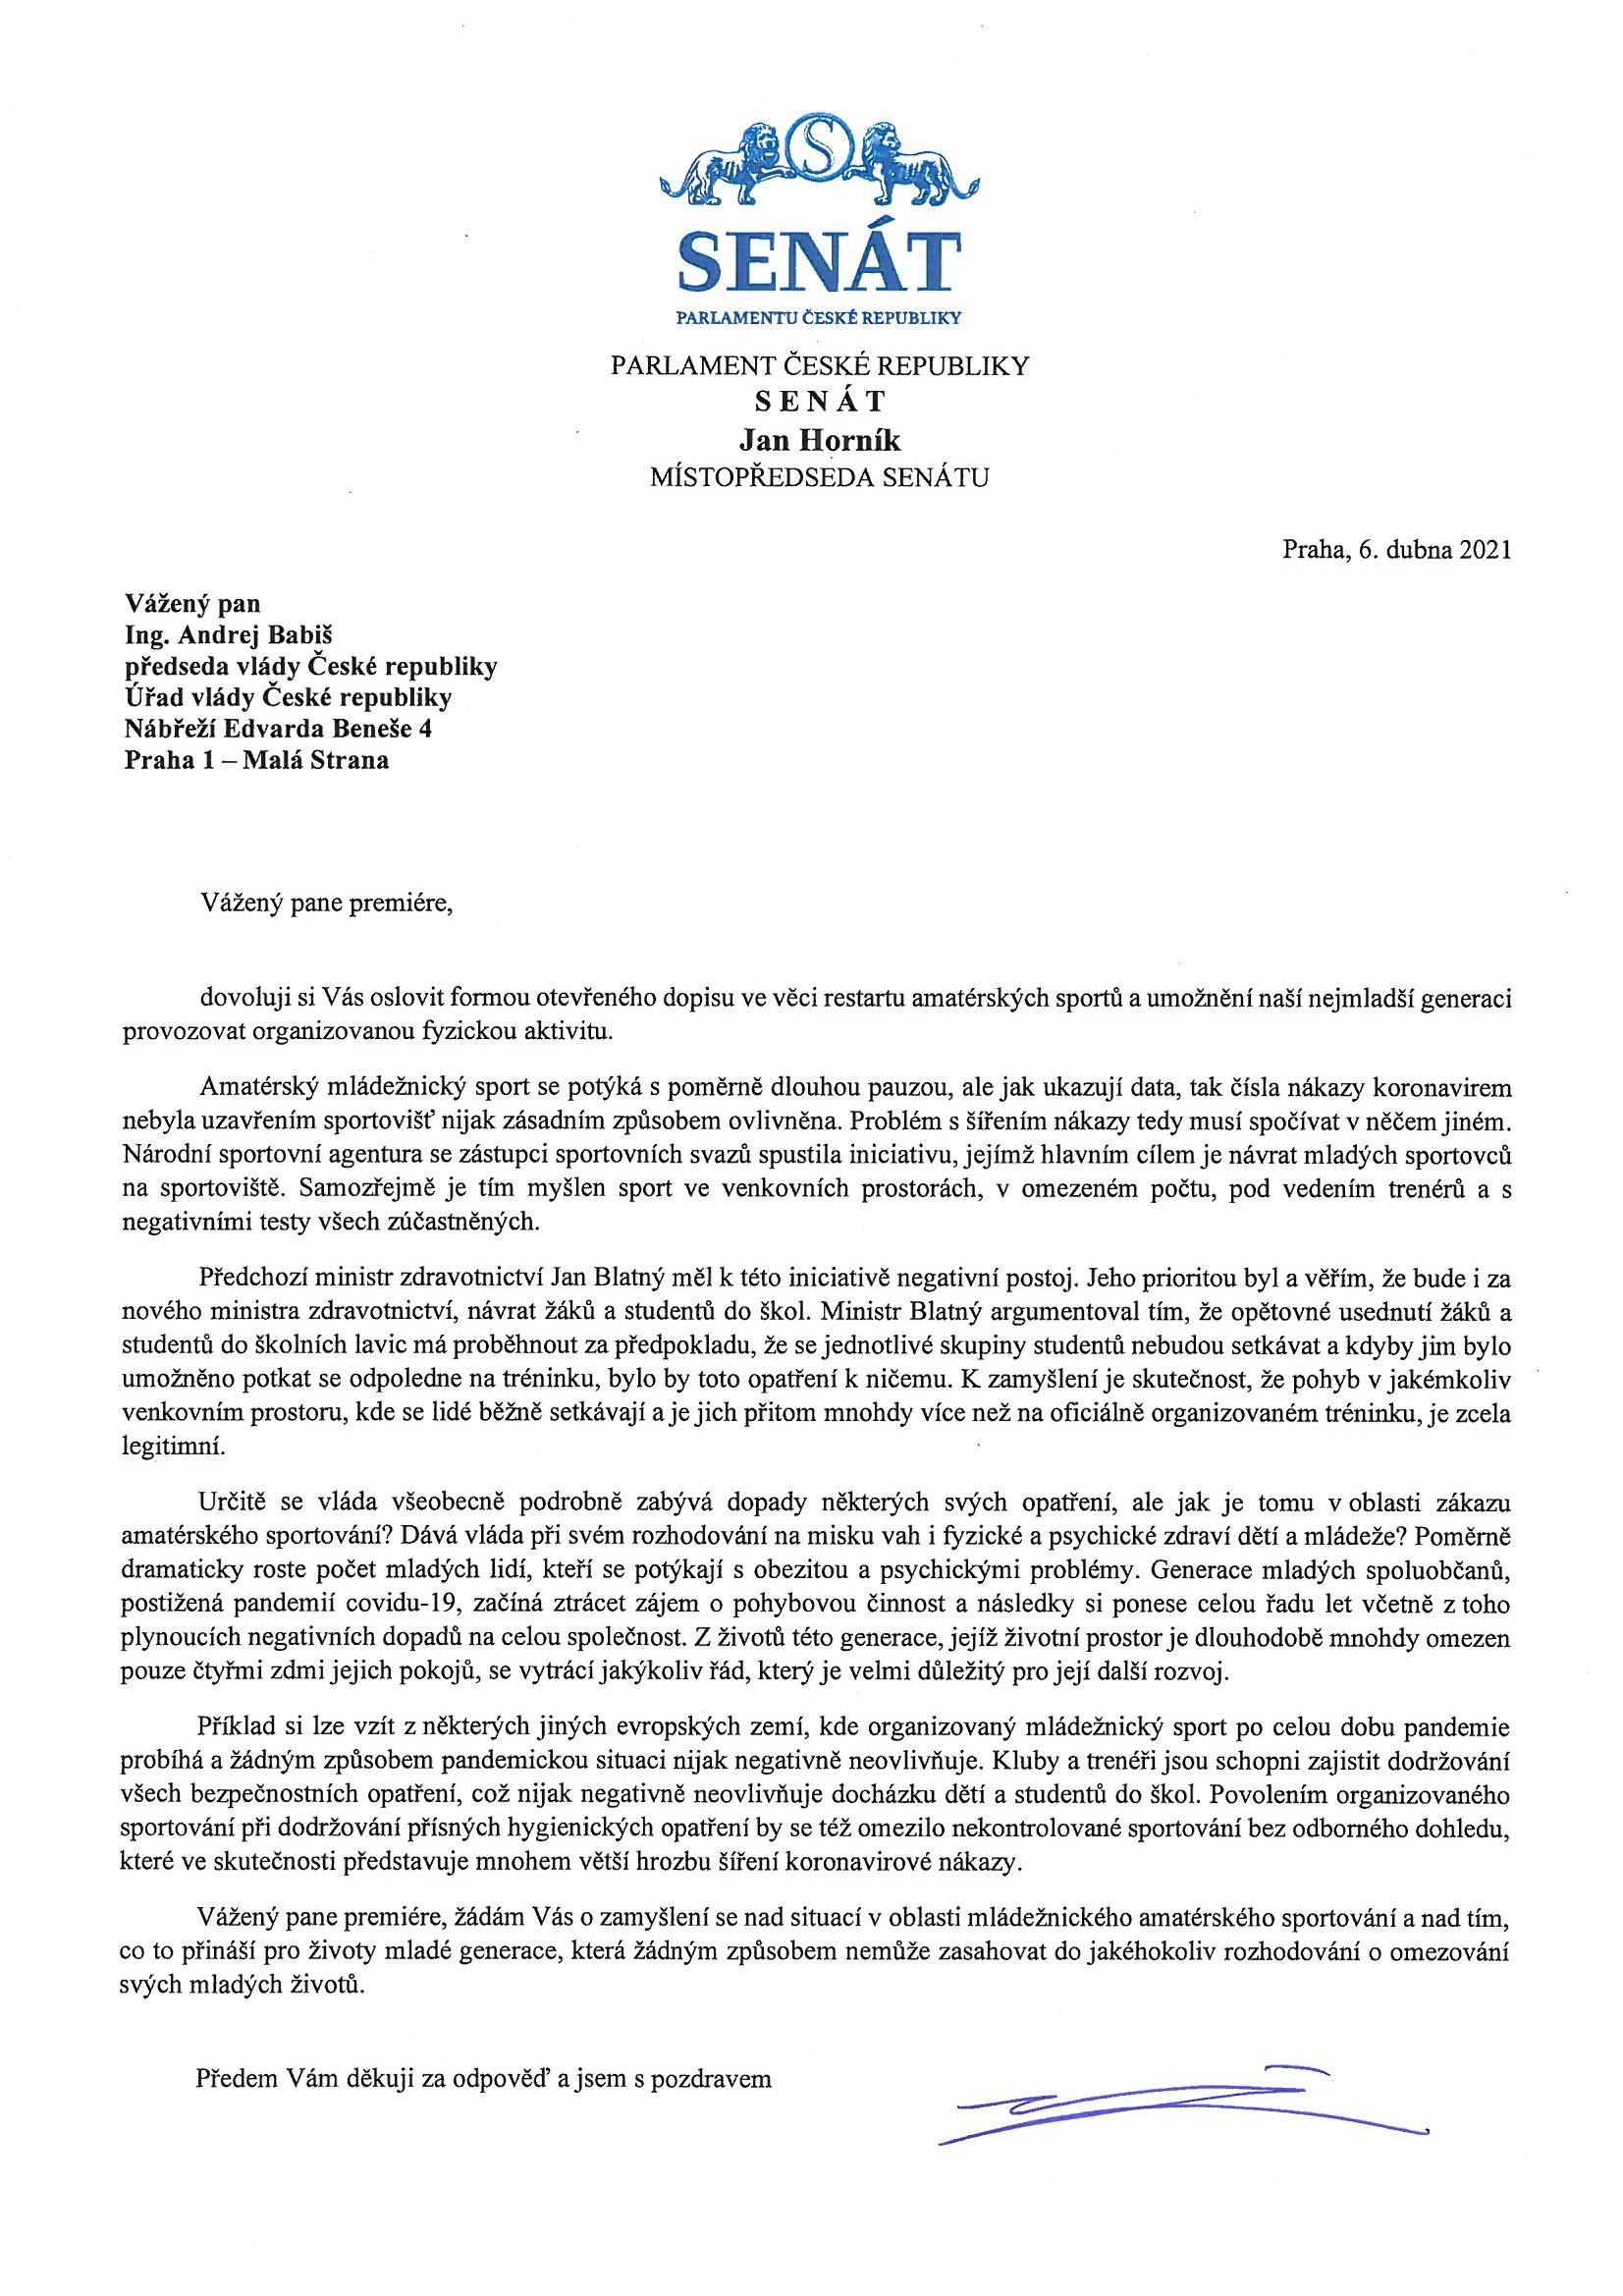 Otevřený dopis senátora Horníka